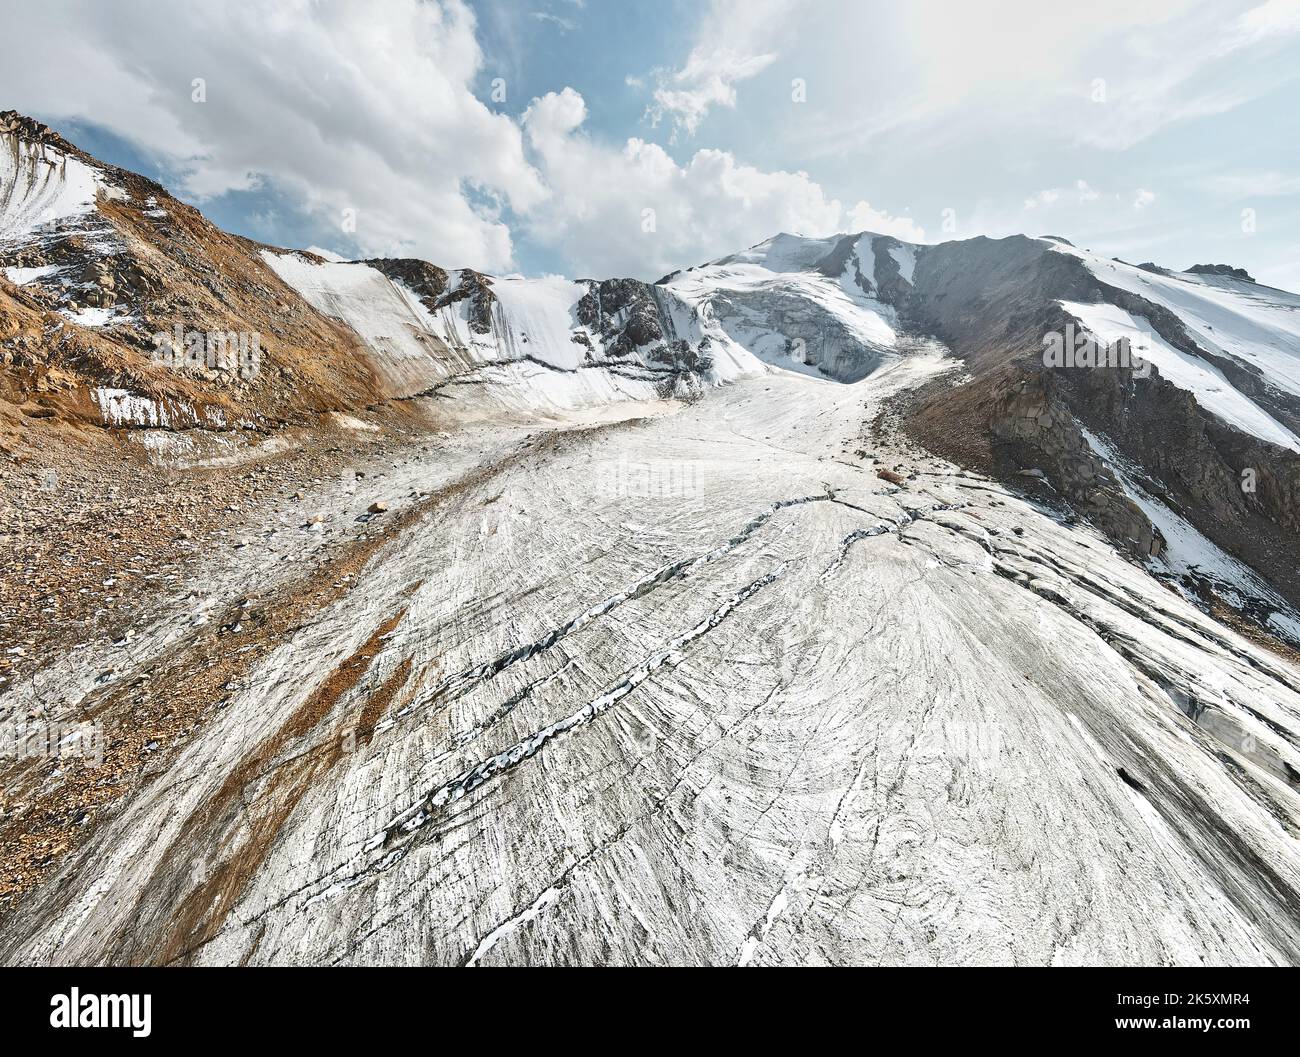 Bellissimo scenario del ghiacciaio di ghiaccio con crack e neve berretto di montagne vicino Almaty città, Kazakhstan. Ripresa aerea con drone vista dall'alto verso il basso all'aperto Foto Stock